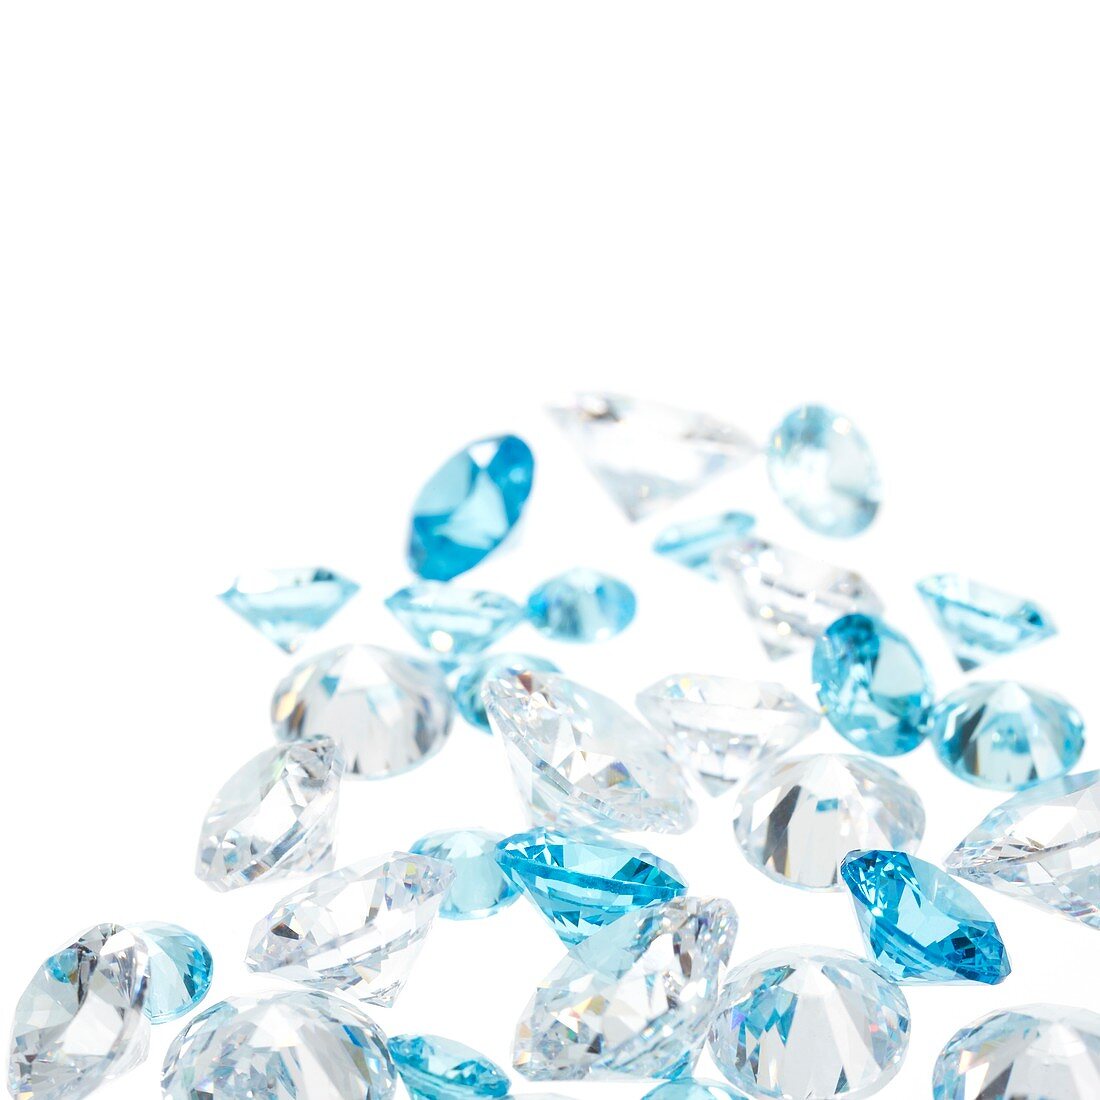 Diamonds and aquamarine gemstones